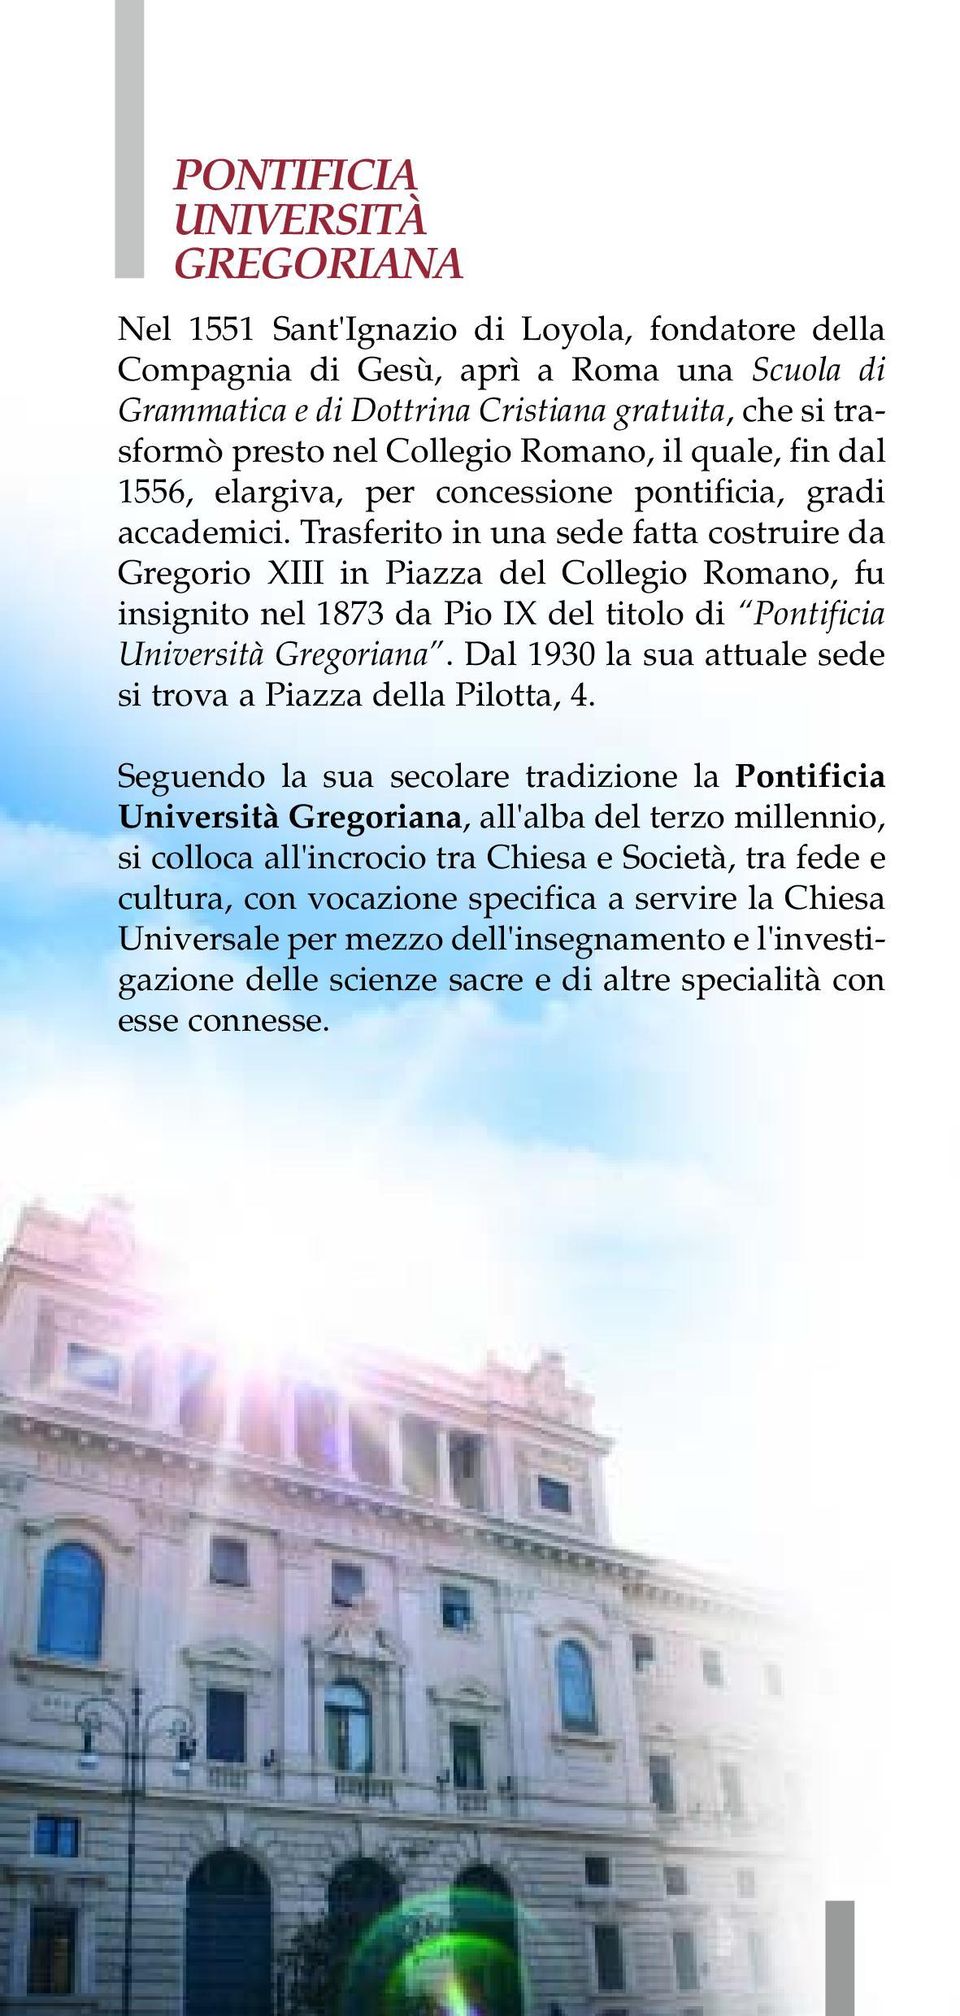 Trasferito in una sede fatta costruire da Gregorio XIII in Piazza del Collegio Romano, fu insignito nel 1873 da Pio IX del titolo di Pontificia Università Gregoriana.